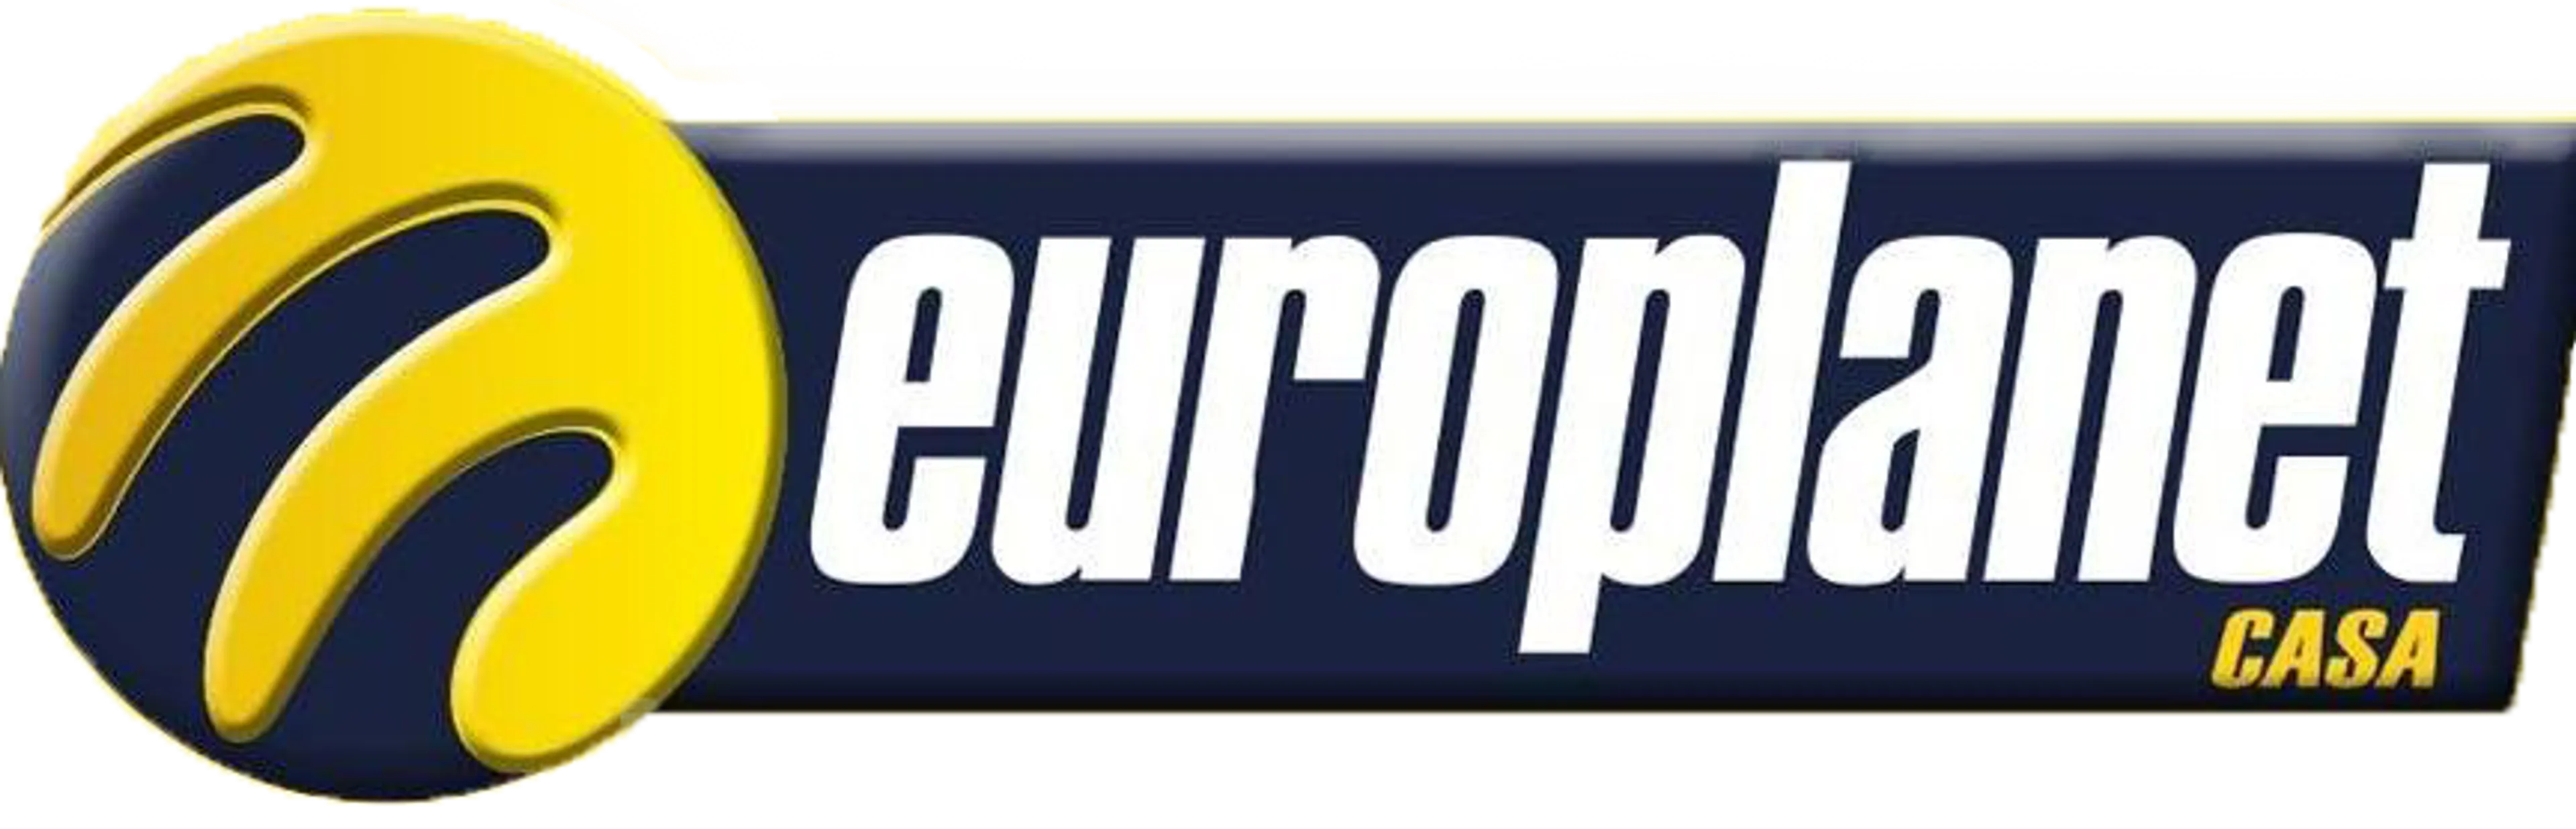 EUROPLANET logo